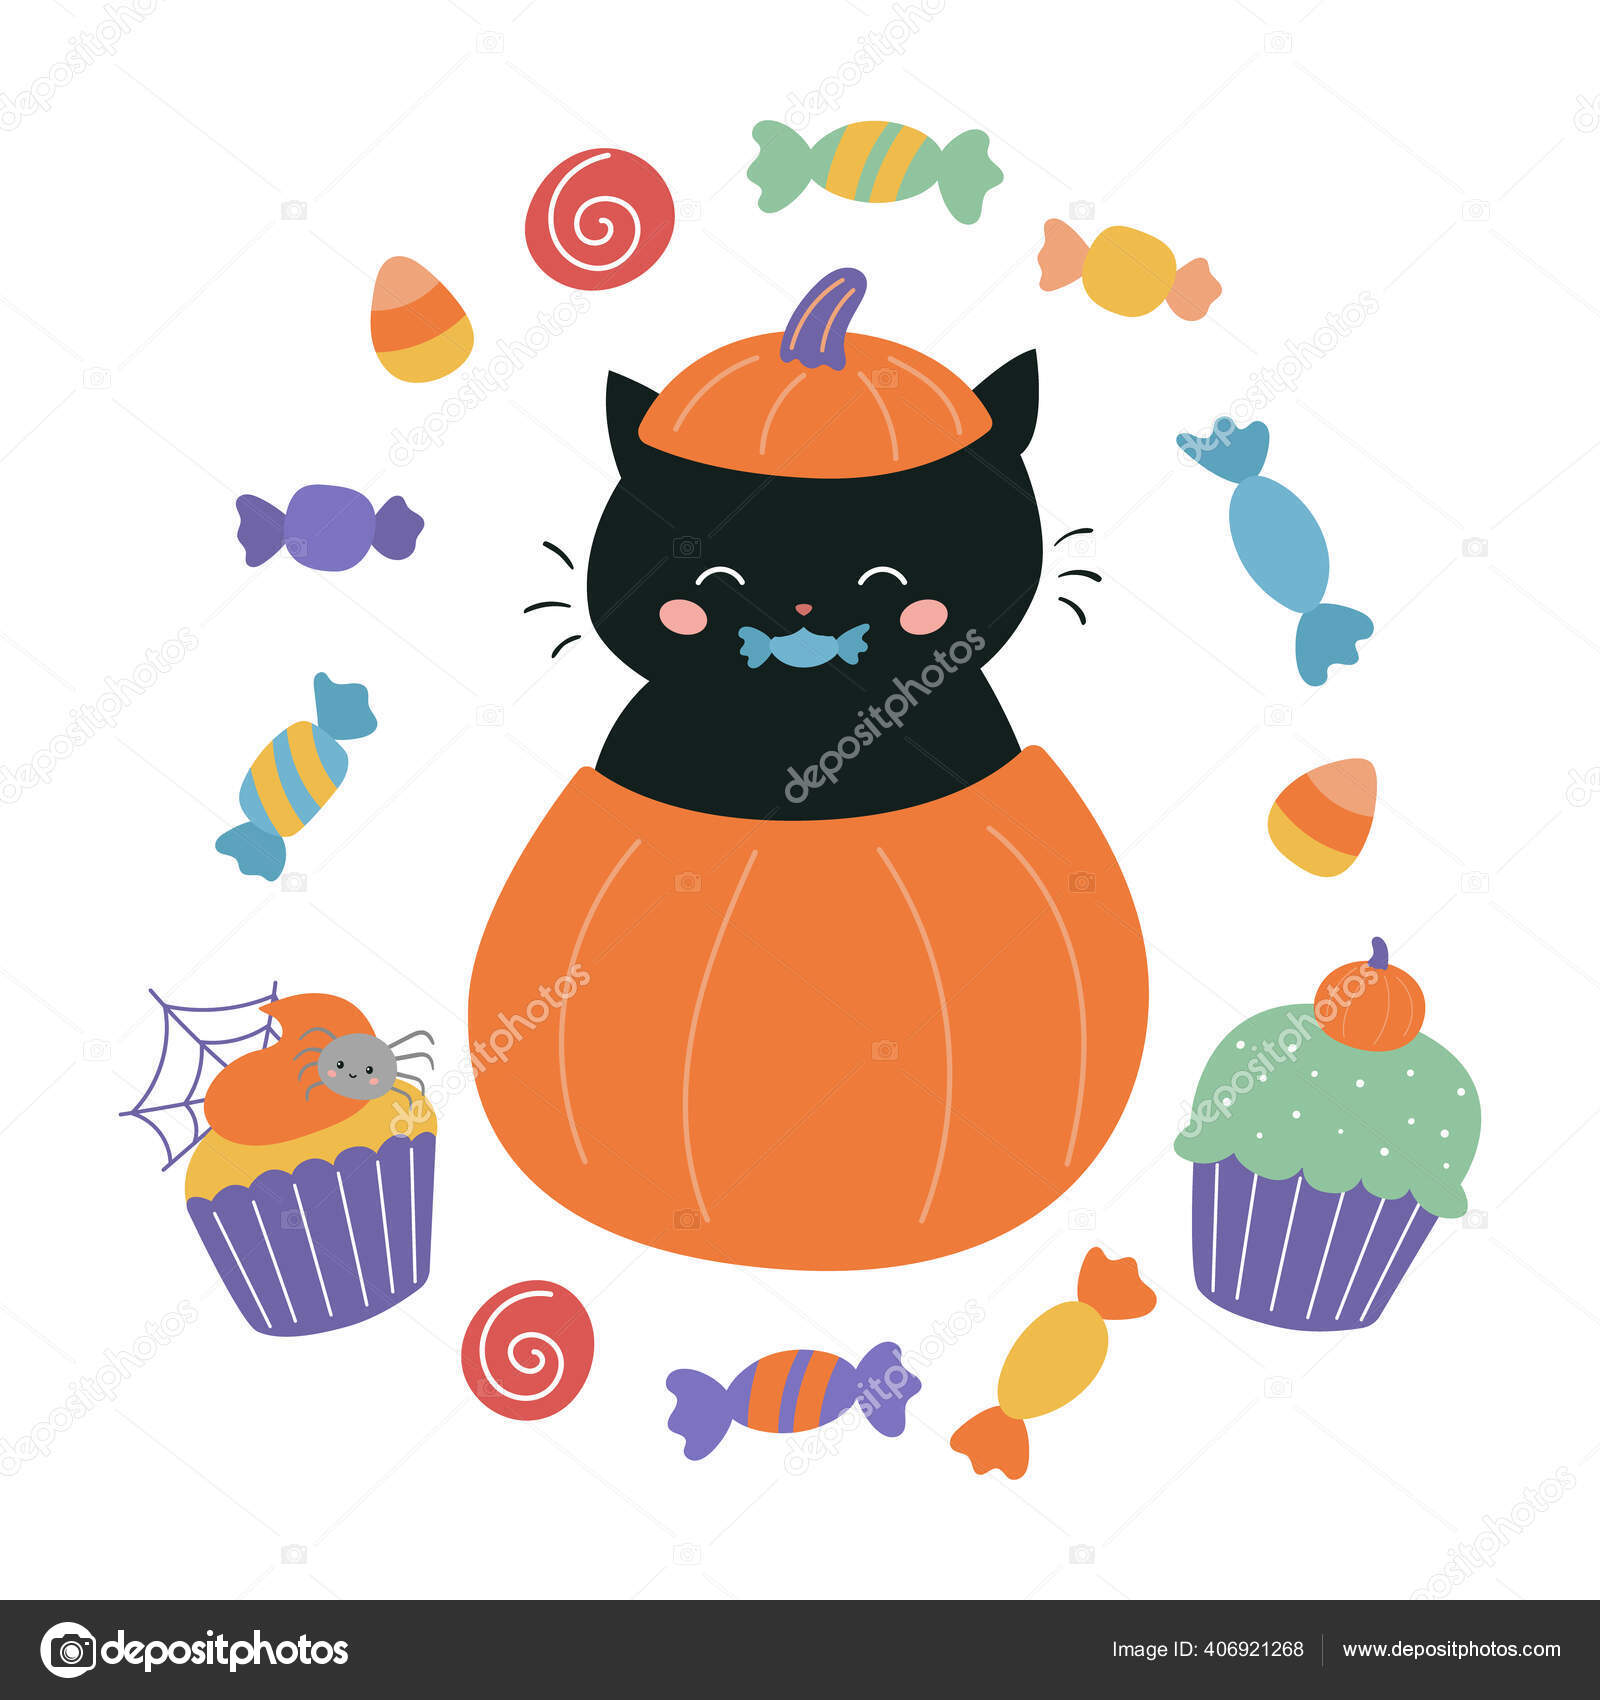 Ajude um gato preto a encontrar o caminho para a casa. jogo de labirinto de  halloween para crianças em estilo cartoon